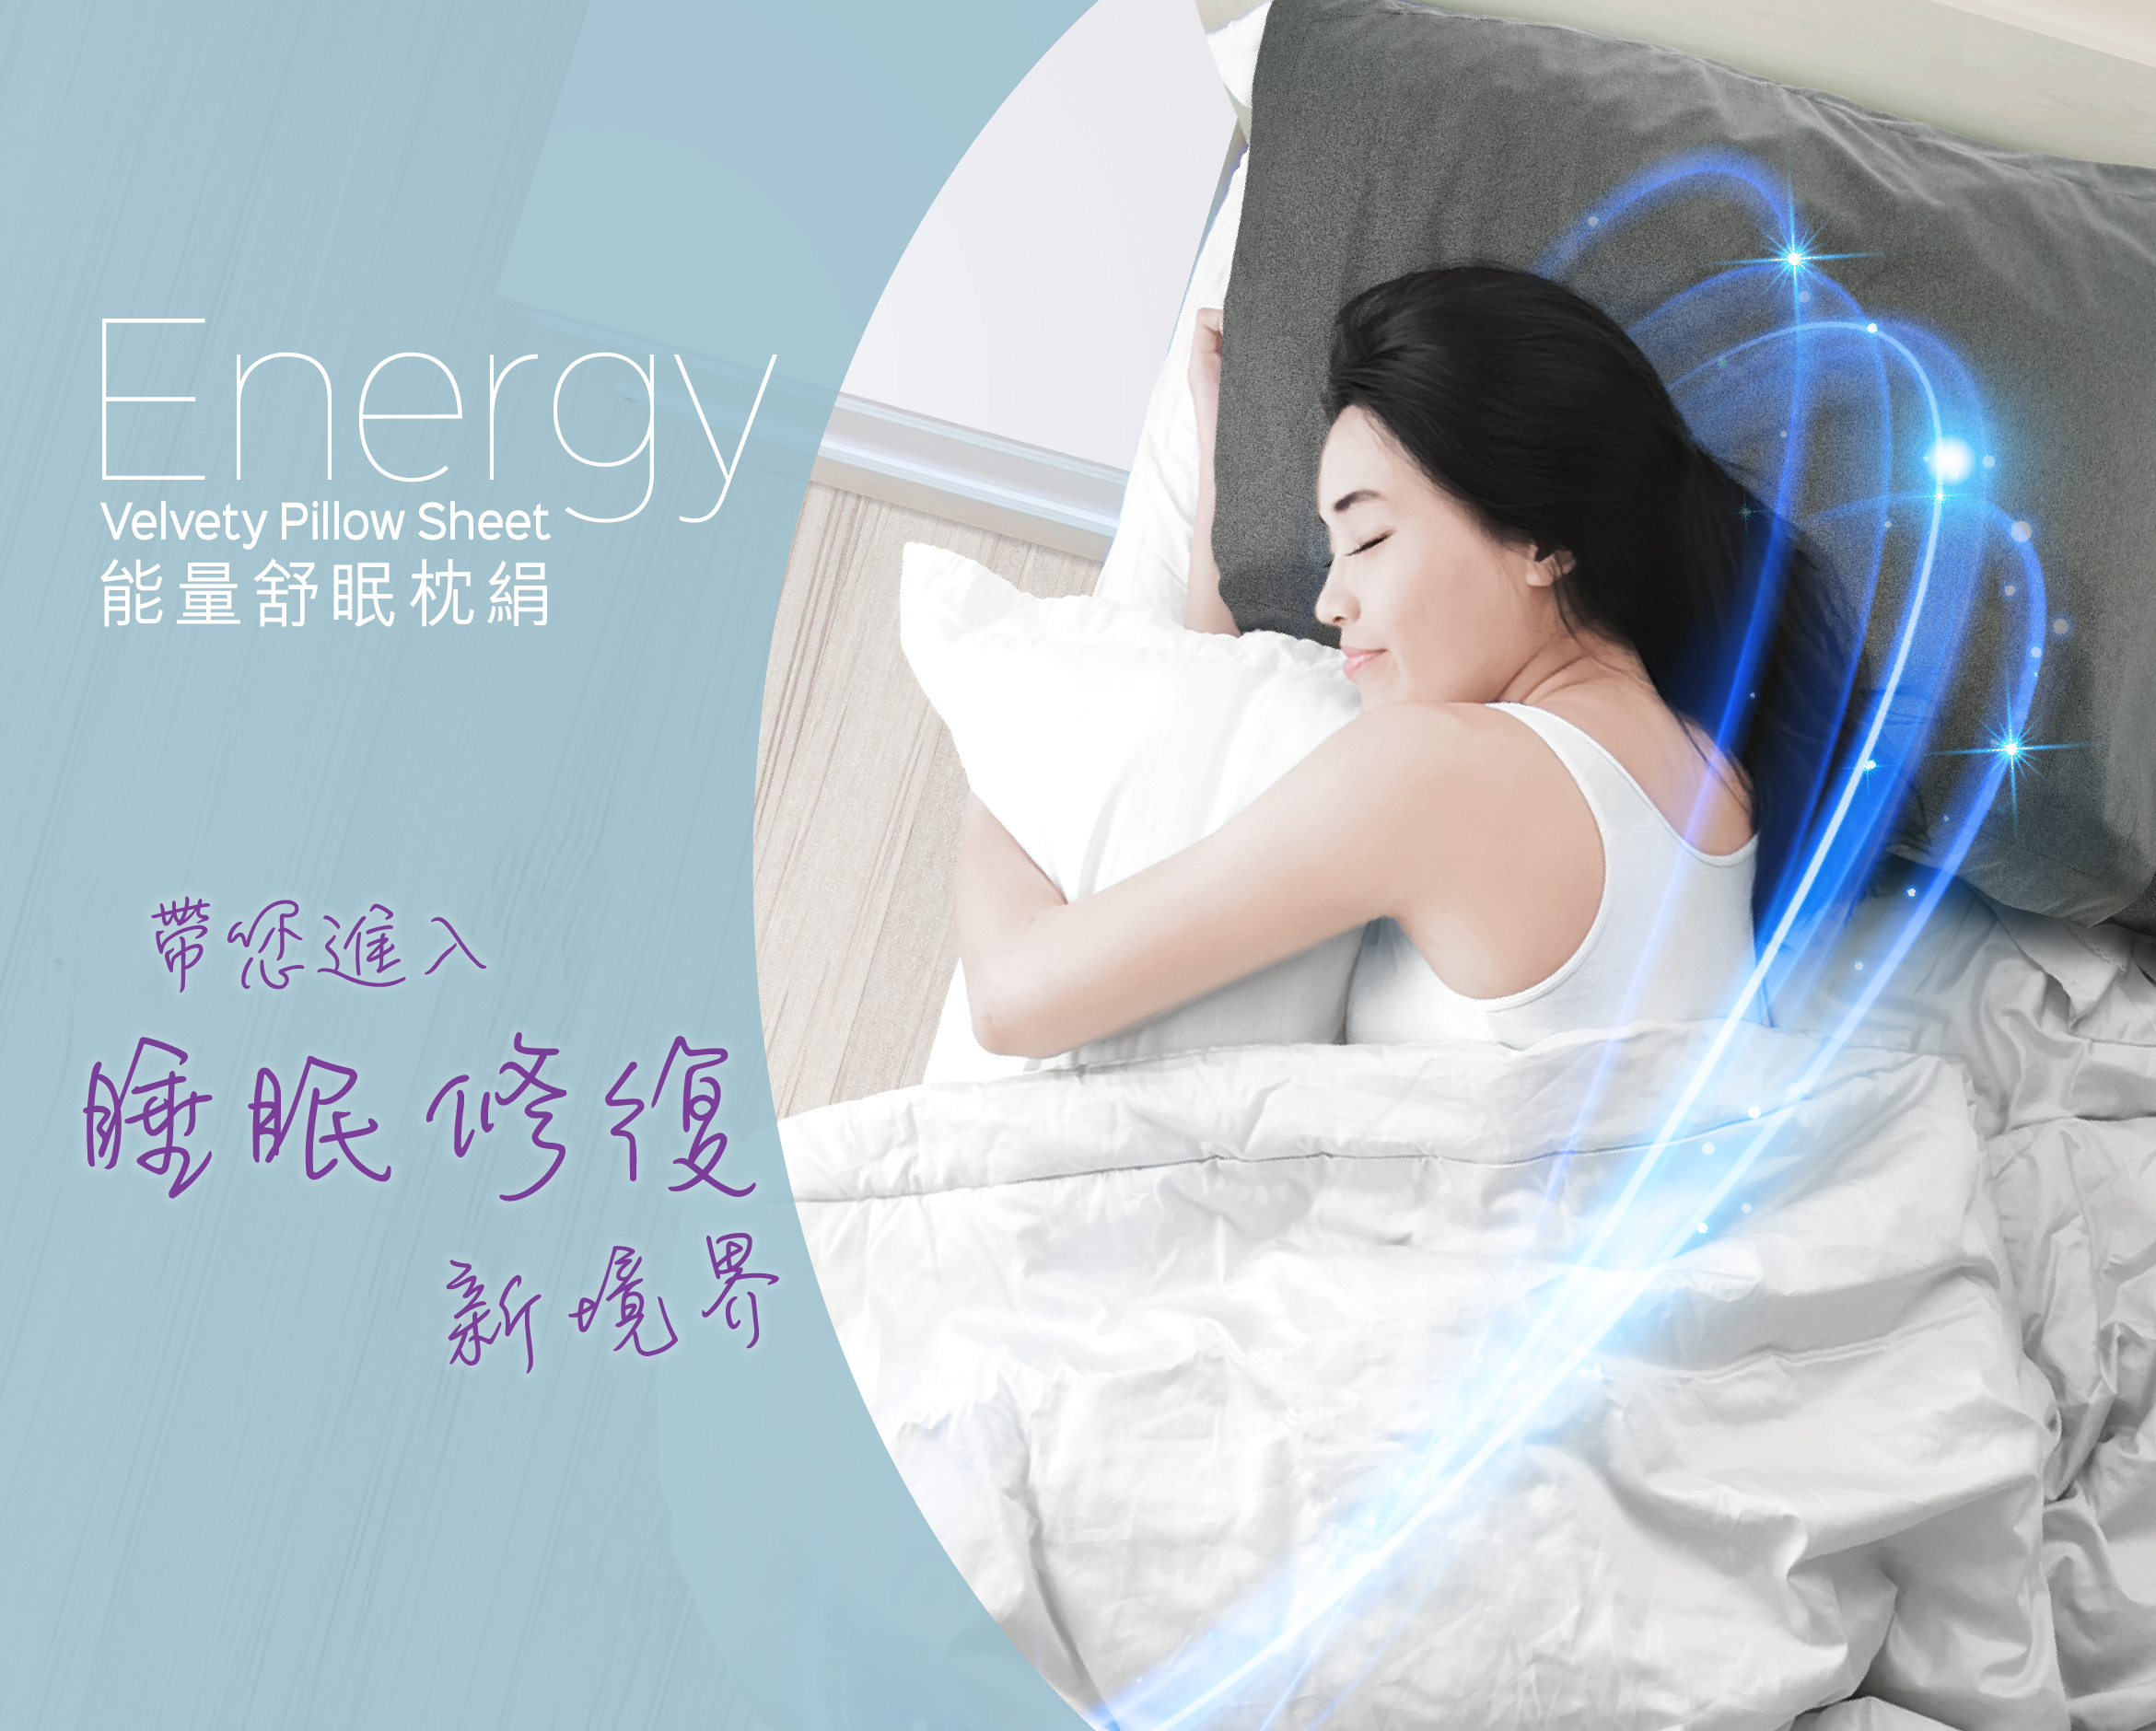 Energy Velvety Pillow Sheet Home Hero Mobile@2x 100